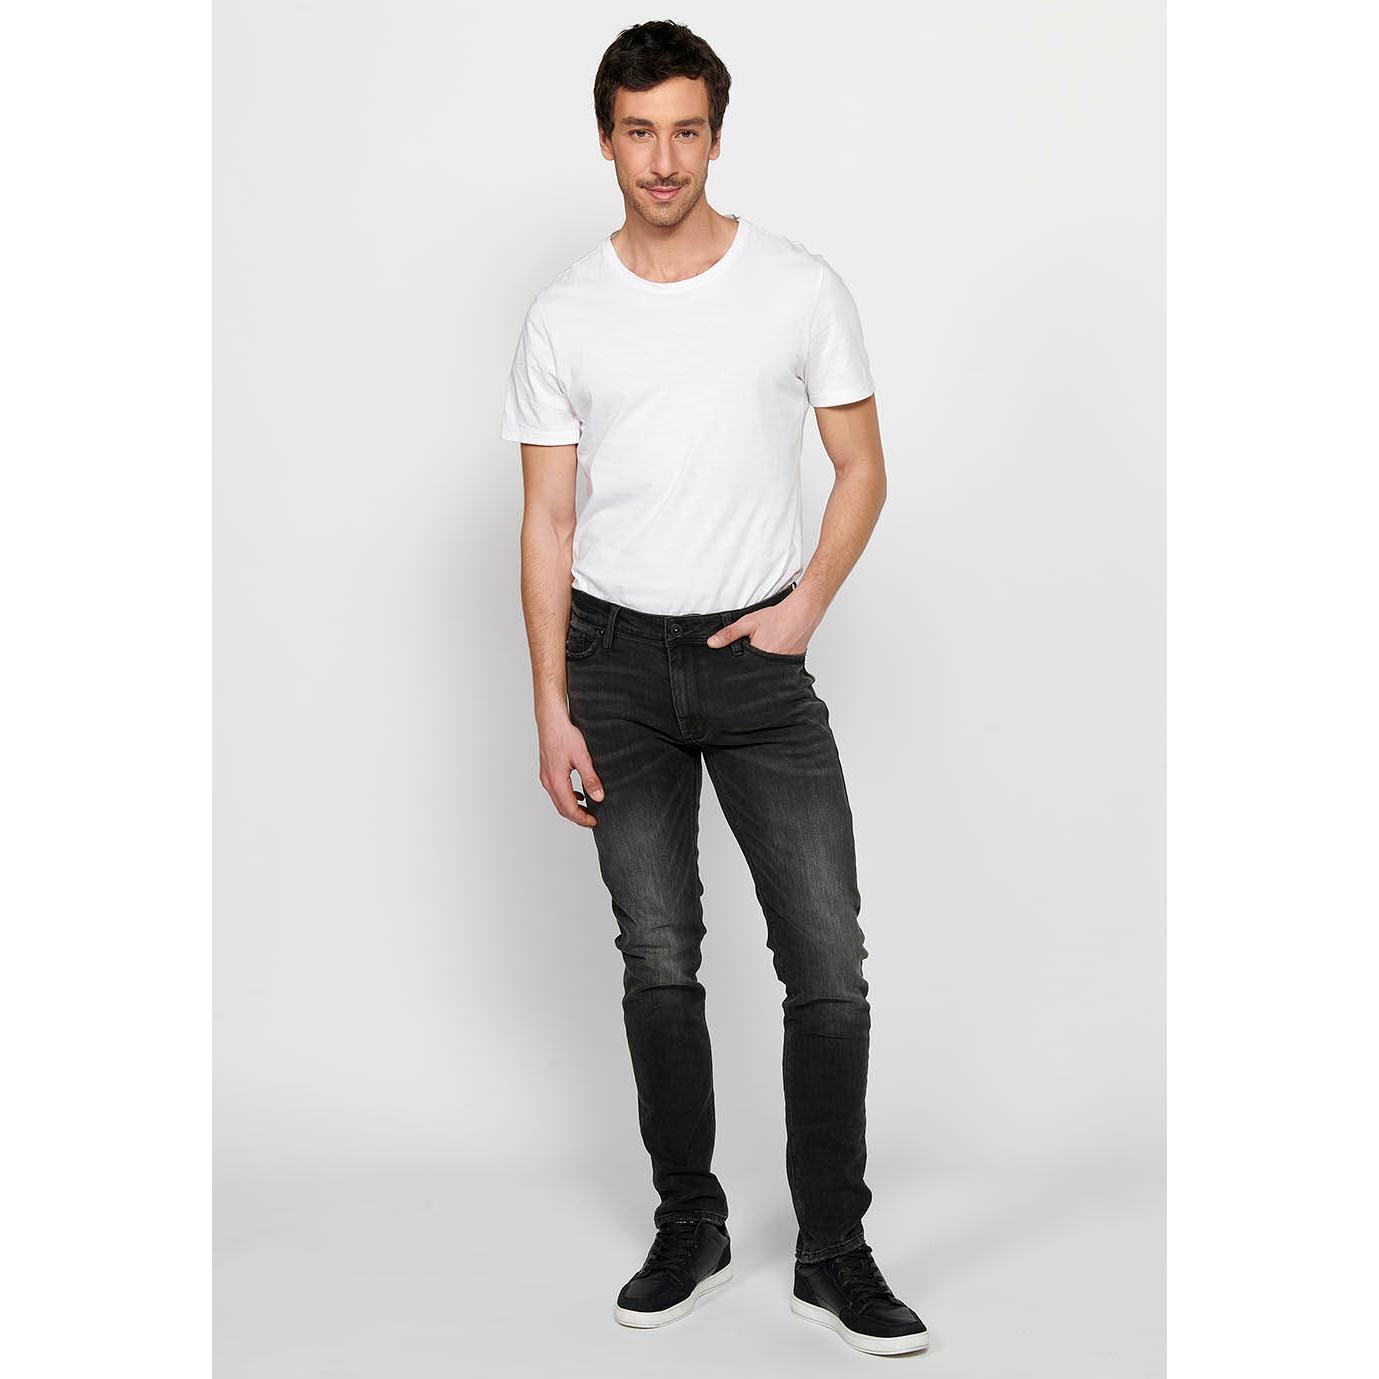 Koroshi - Koroshi Pantalón jeans largo straigth regular fit con Cierre delantero con cremallera y botón de Color Denim Negro para Hombre